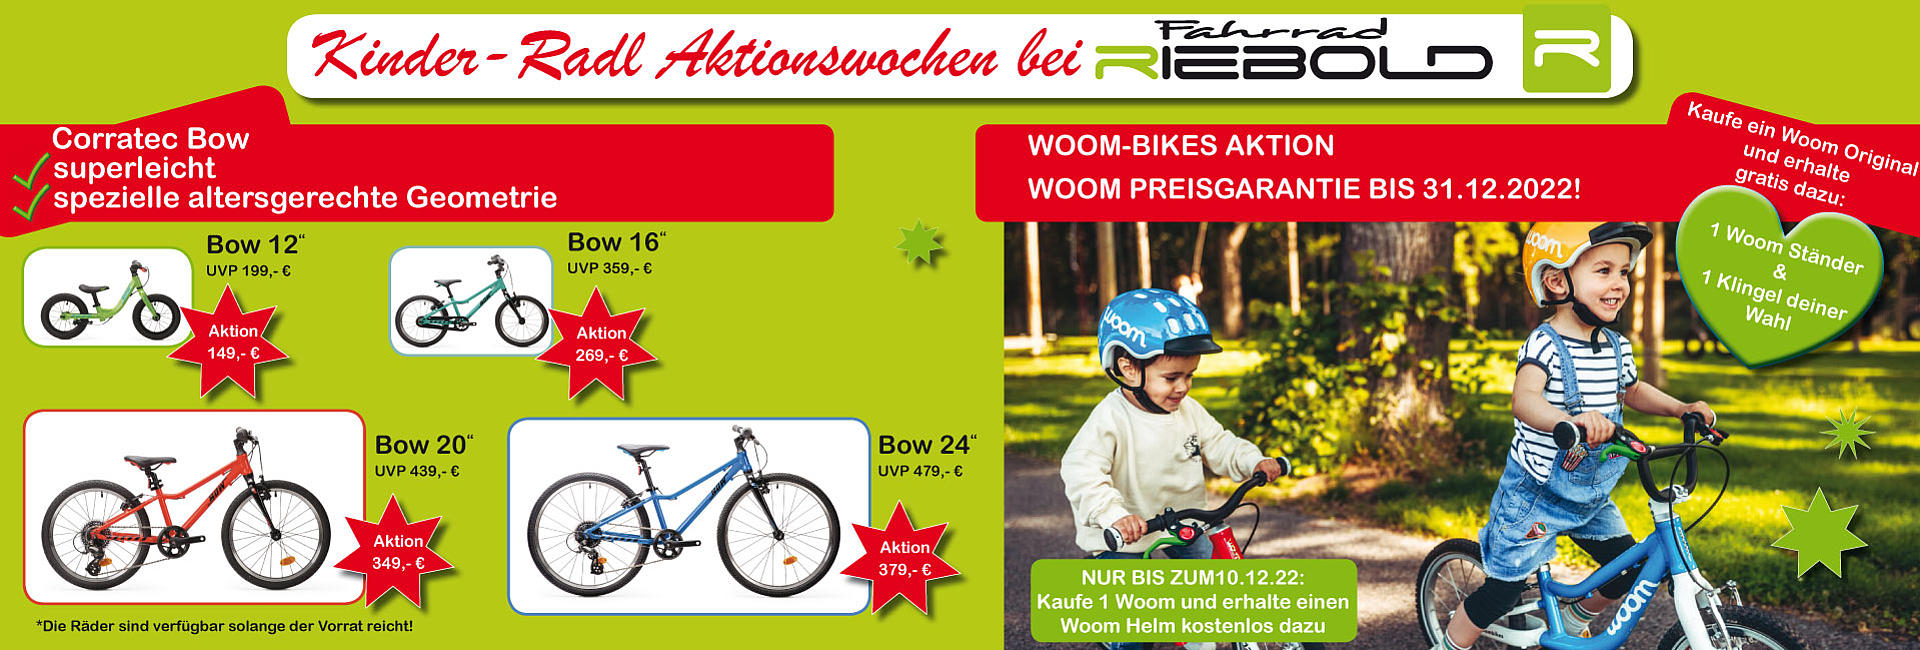 Fahrrad Riebold München - Aktionswochen Kinderräder